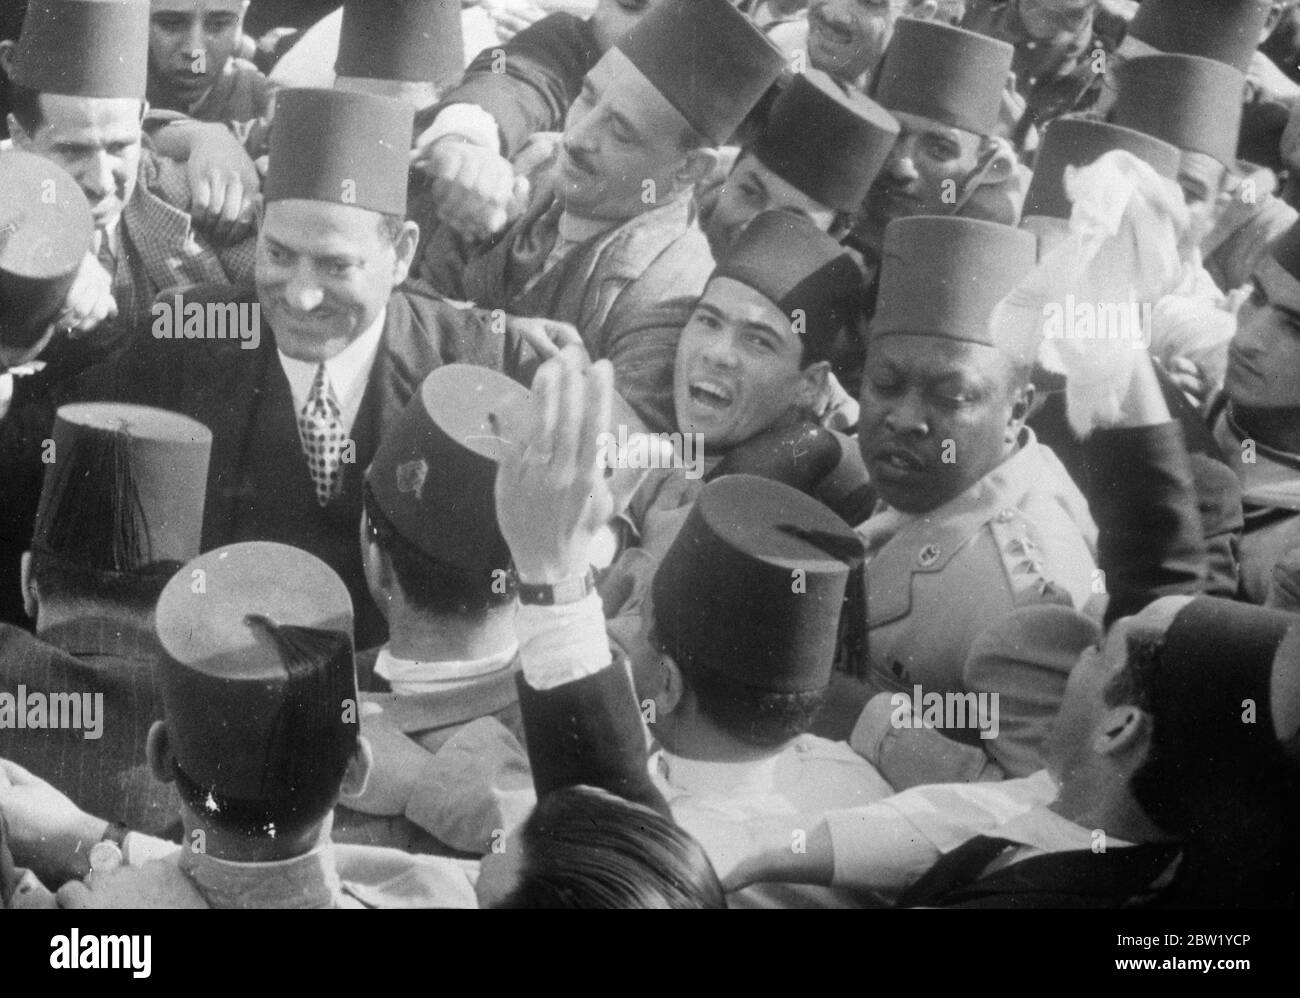 Una gran bienvenida para el primer Ministro egipcio. Cuando llega a casa de la Liga. Una multitud rápida, estimada en 200,000, llenó las calles de Alejandría para dar al primer Ministro egipcio, Nahas Pasha, una bienvenida entusiasta a su regreso de Ginebra, donde había encabezado la primera delegación egipcia a la Liga de Naciones tras la admisión de Egipto como miembro. Muestra de fotos, Nahas Pasha, el primer ministro egipcio (izquierda) rodeado de seguidores alegres a su llegada a Alejandría. 7 de junio de 1937 Foto de stock